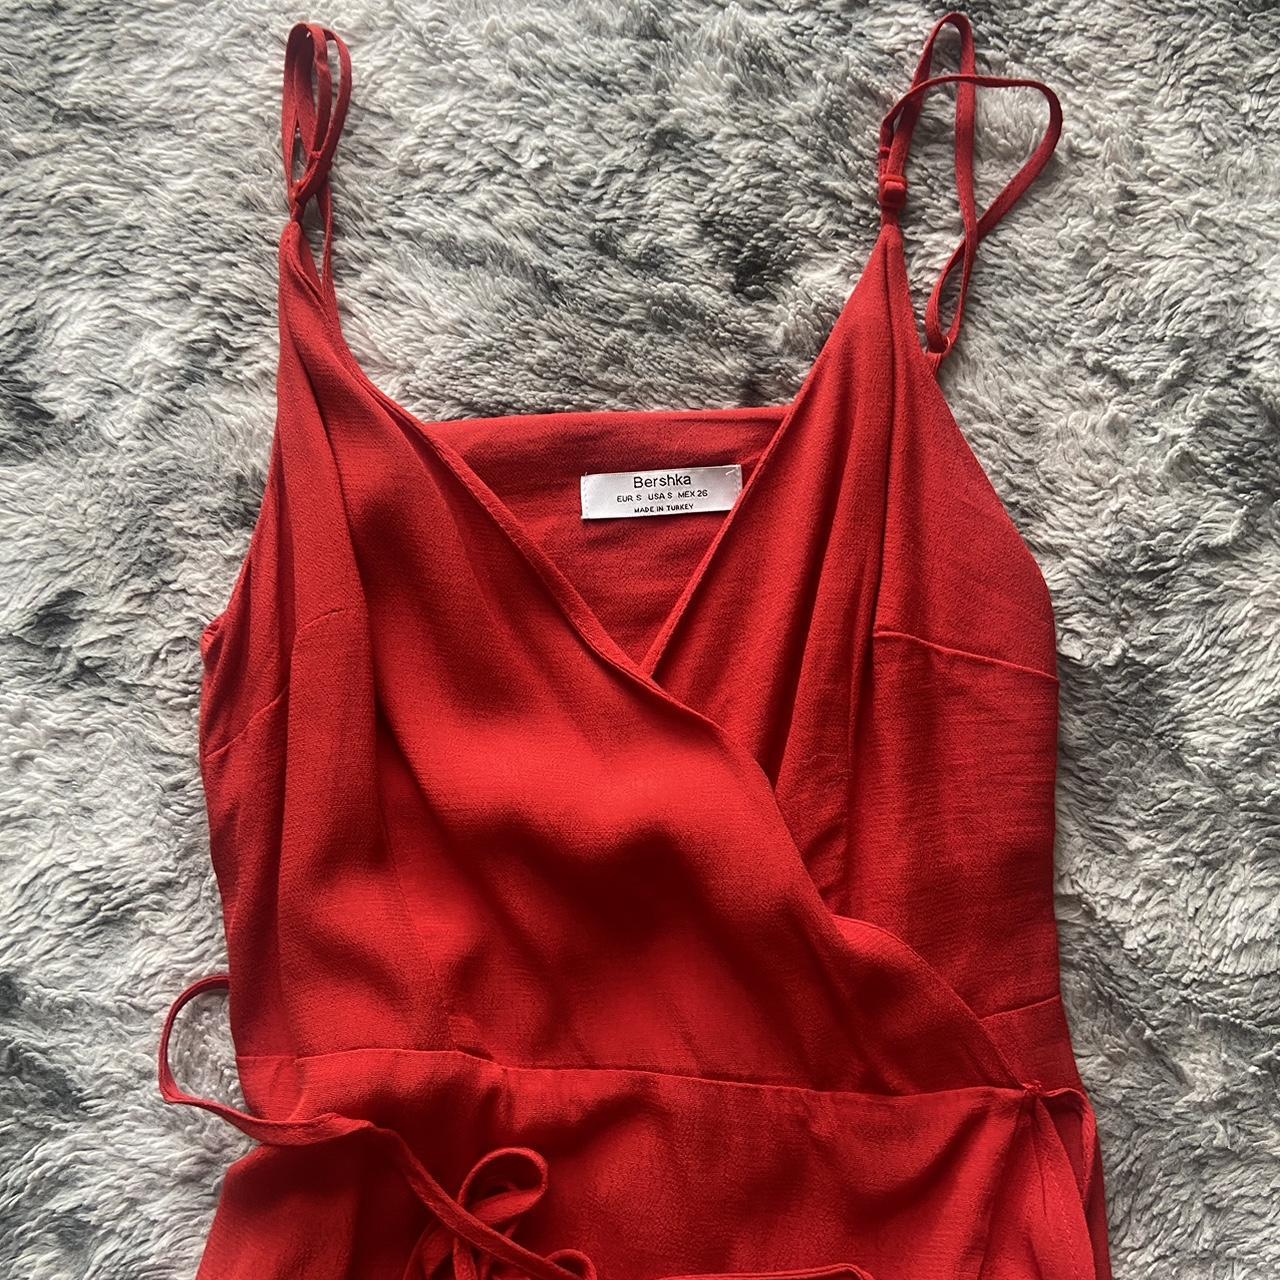 Bershka Women's Red Dress | Depop